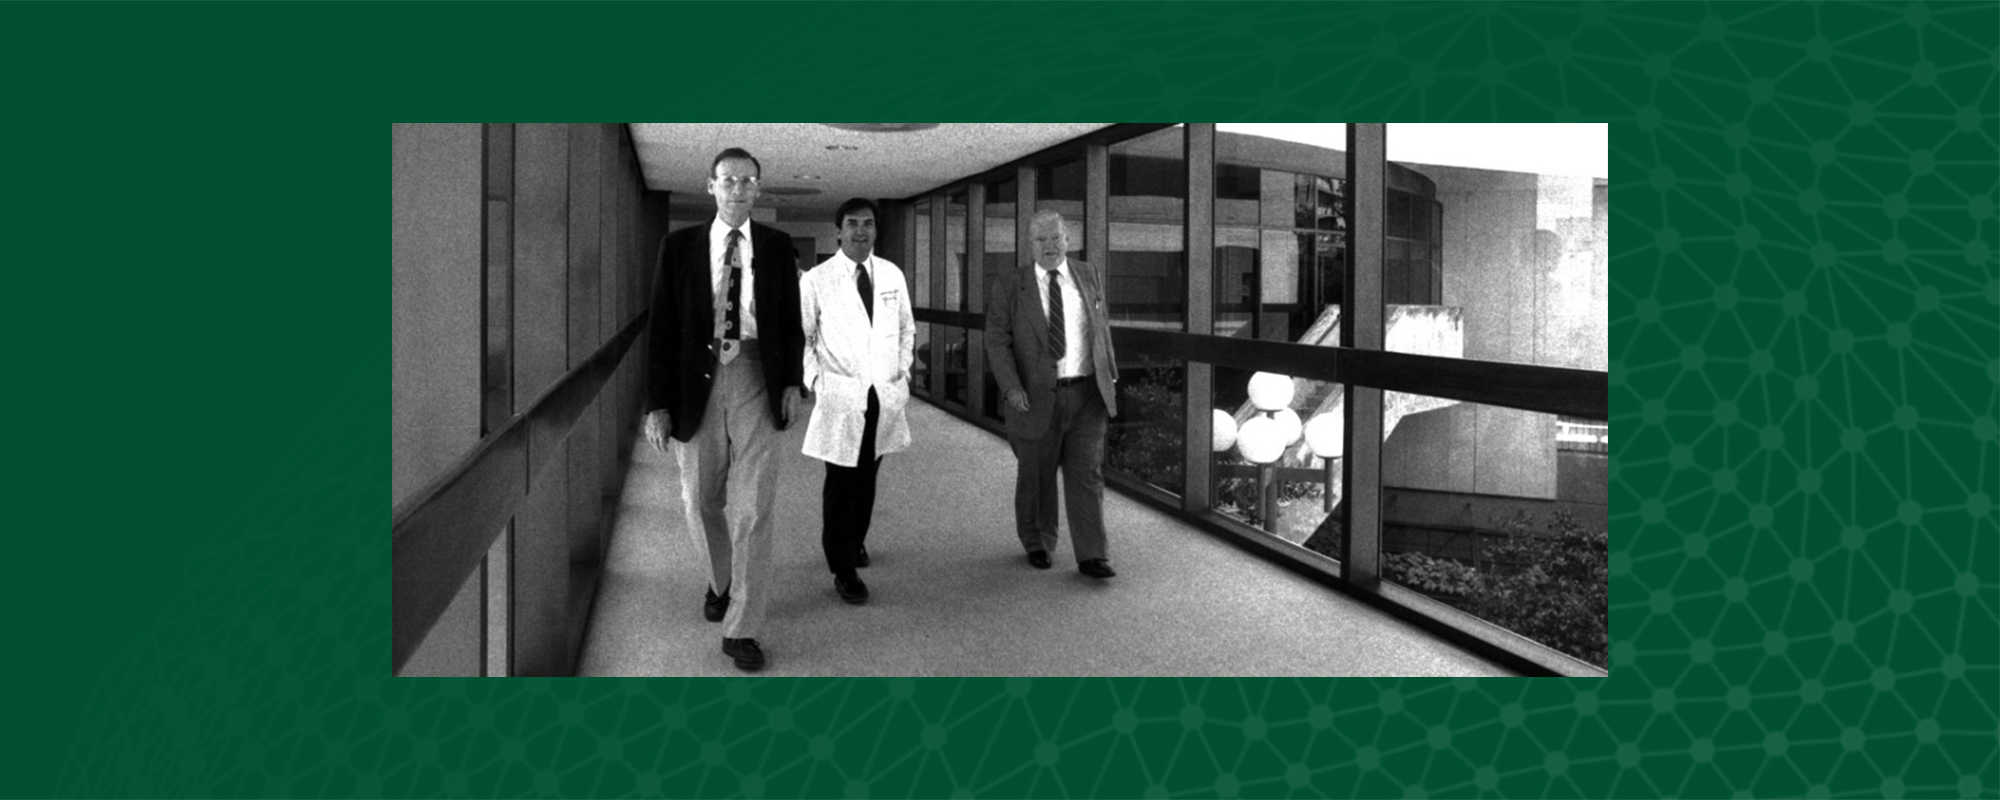 Black and white photo of men walking through a hallway